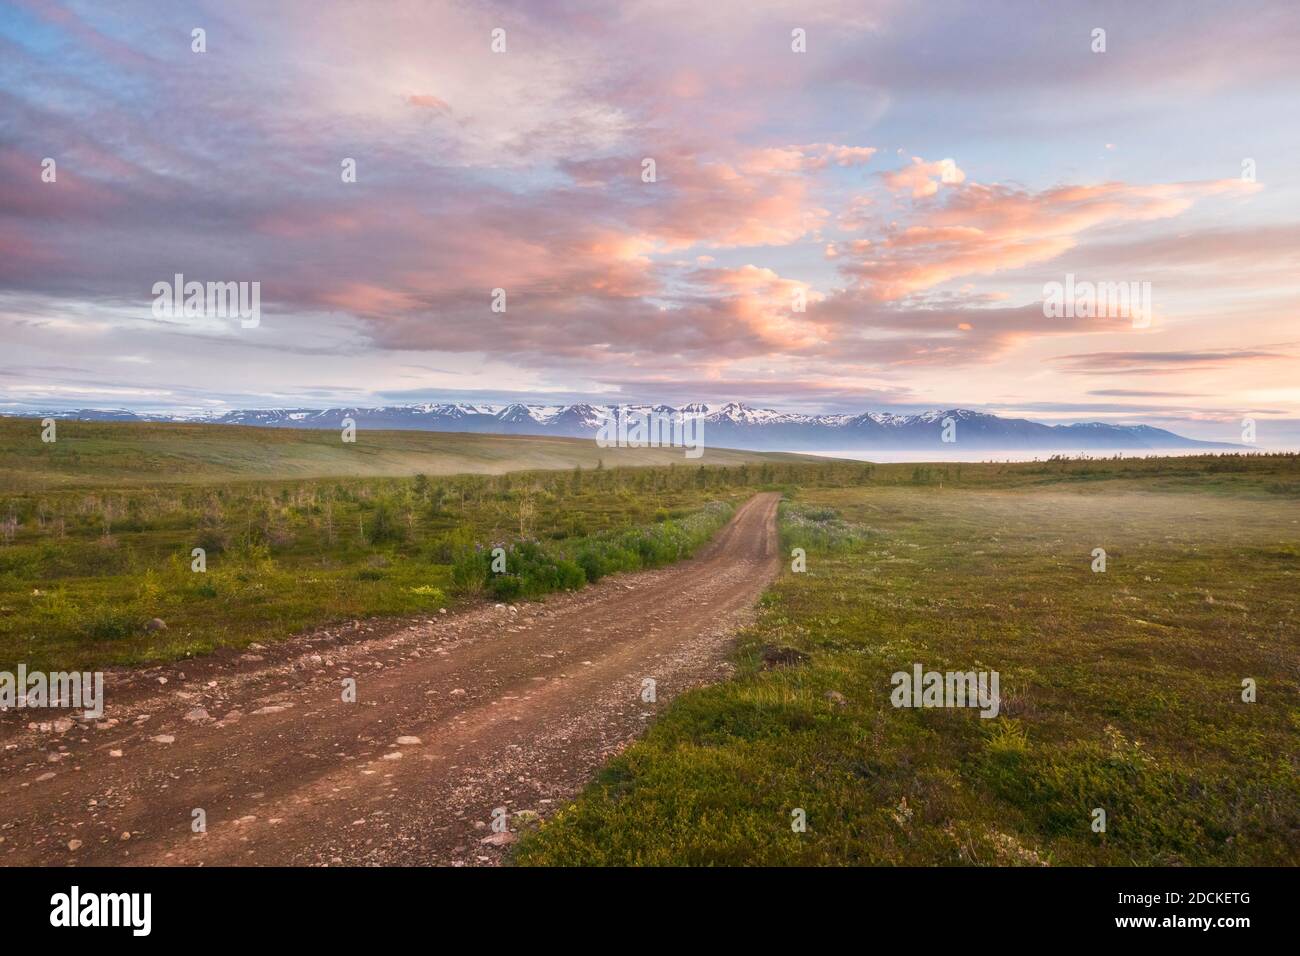 Route de gravier à travers la plaine en automne dans la lumière du soir, montagnes enneigées à l'arrière, Norourping, Norourland eystra, Islande Banque D'Images